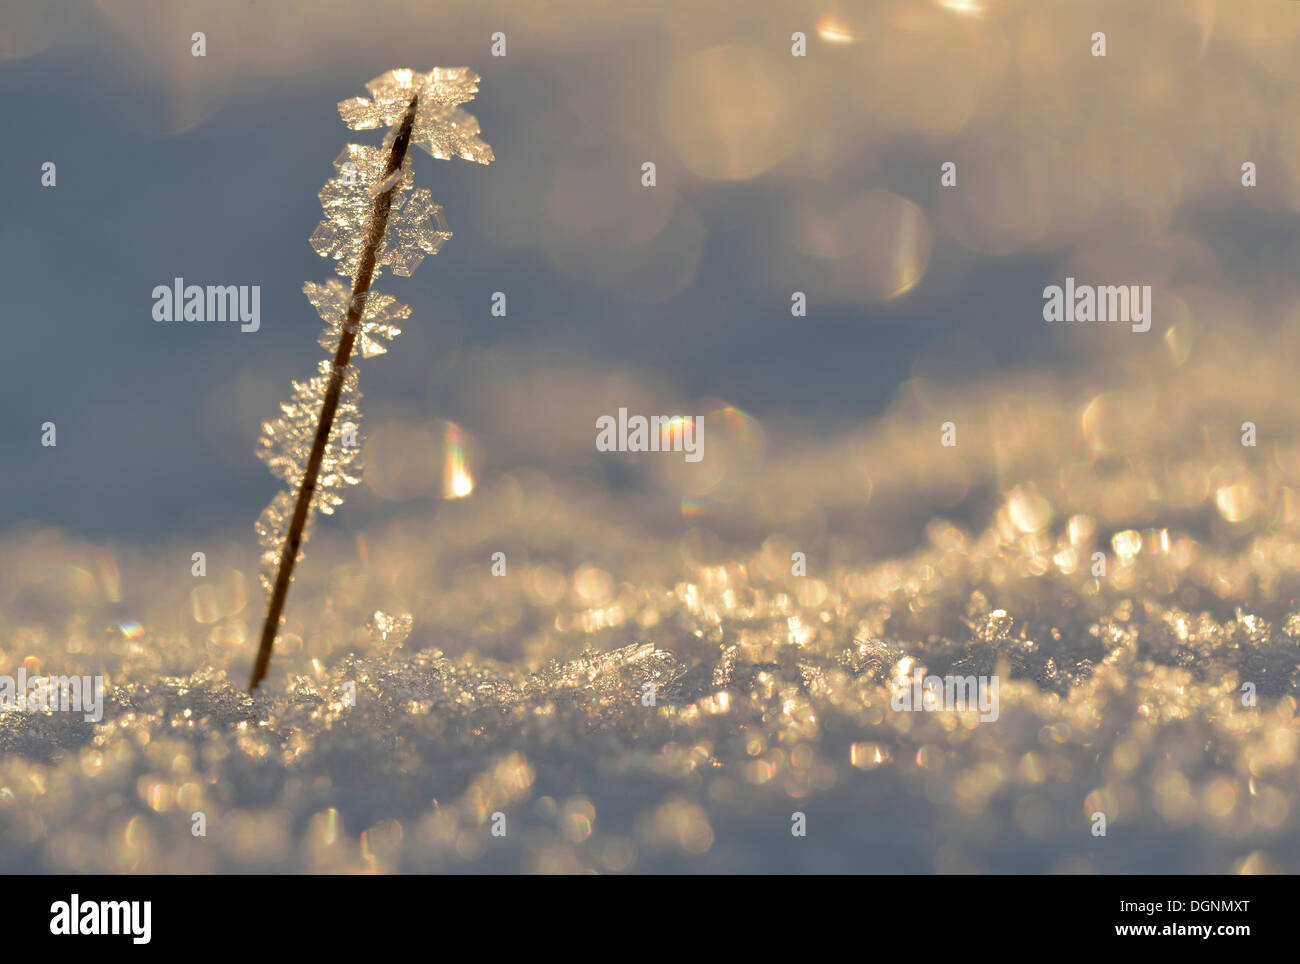 La glace et la neige avec rétro-éclairage, le gel et les cristaux de glace sur une branche, Uhyst, Saxe, Allemagne Banque D'Images